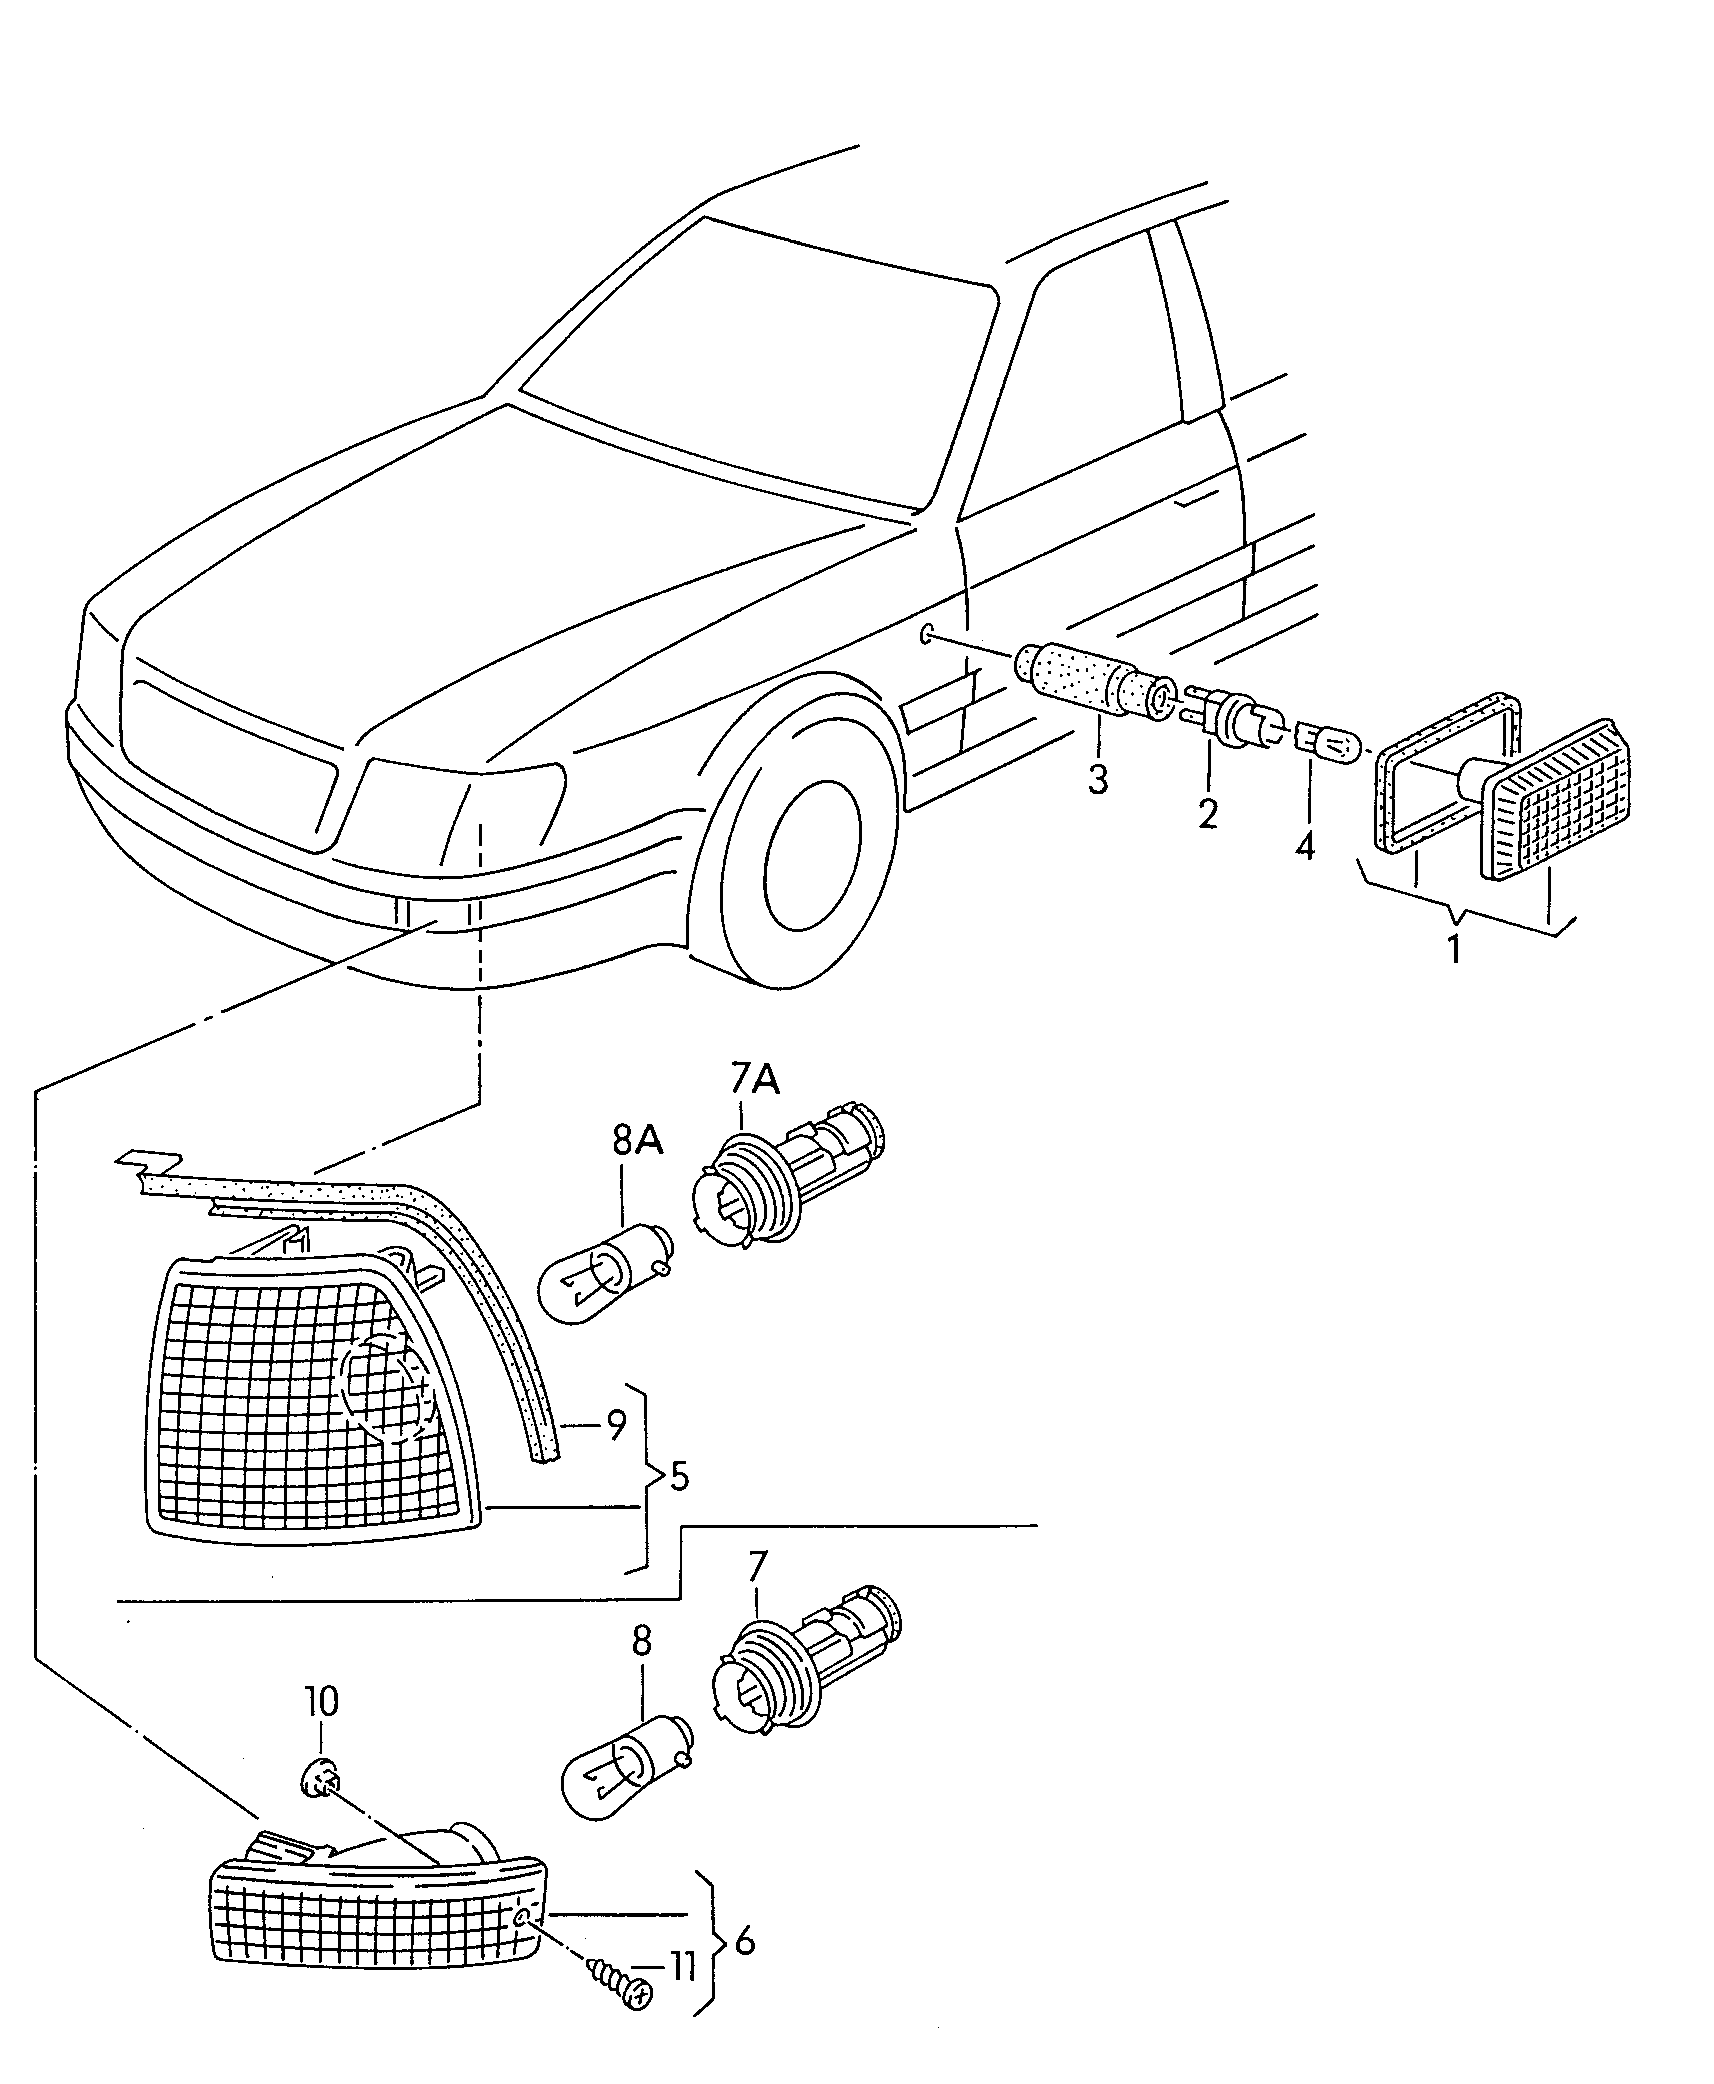 turn signal indicator - Audi Cabriolet(ACA)  